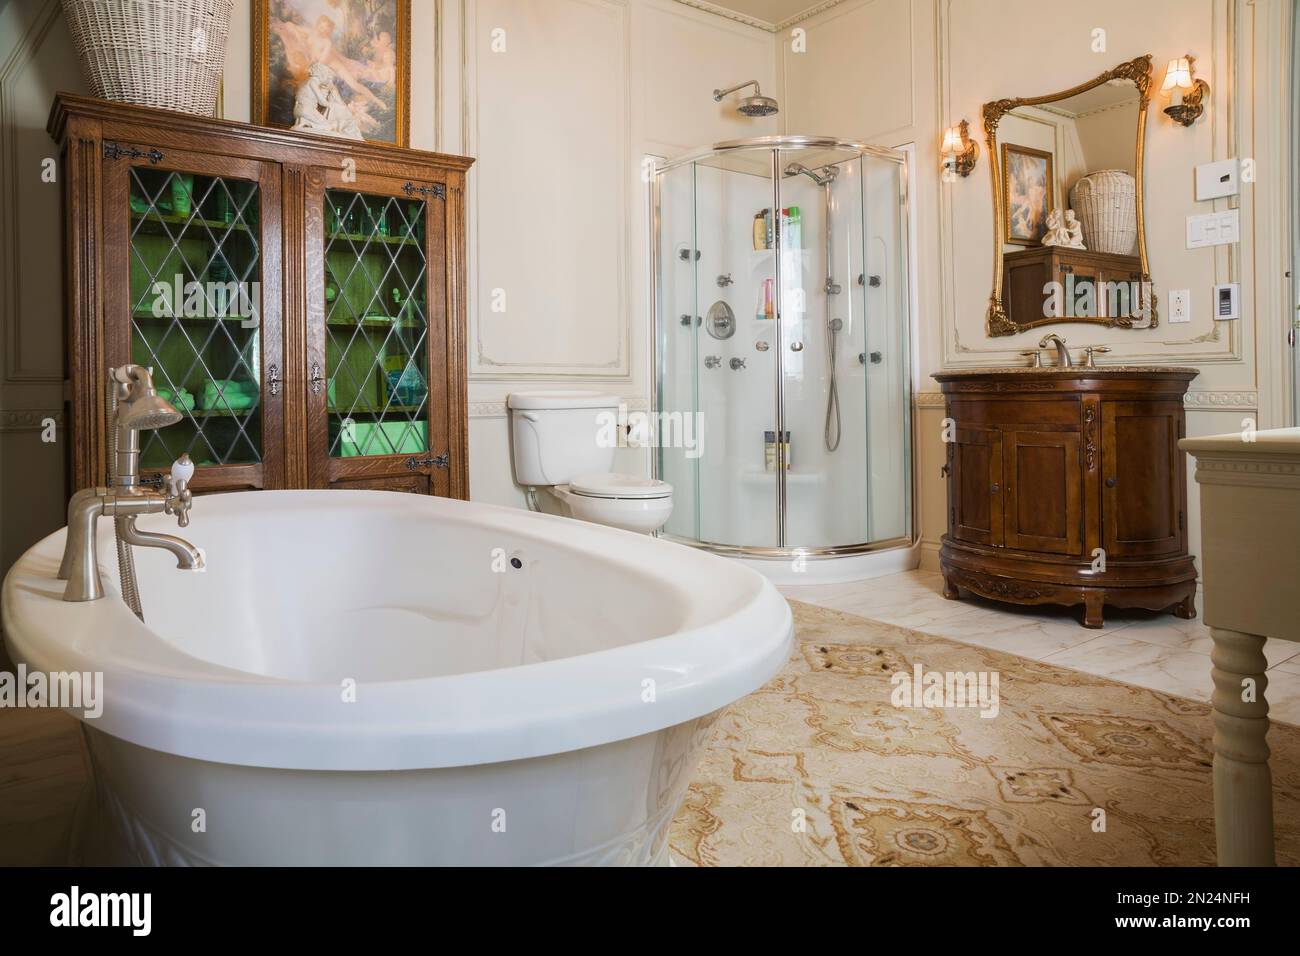 Baignoire autoportante de style bateau, cabine de douche en verre et meuble-lavabo en bois dans la salle de bains principale à l'étage à l'intérieur de la maison de style Renaissance. Banque D'Images